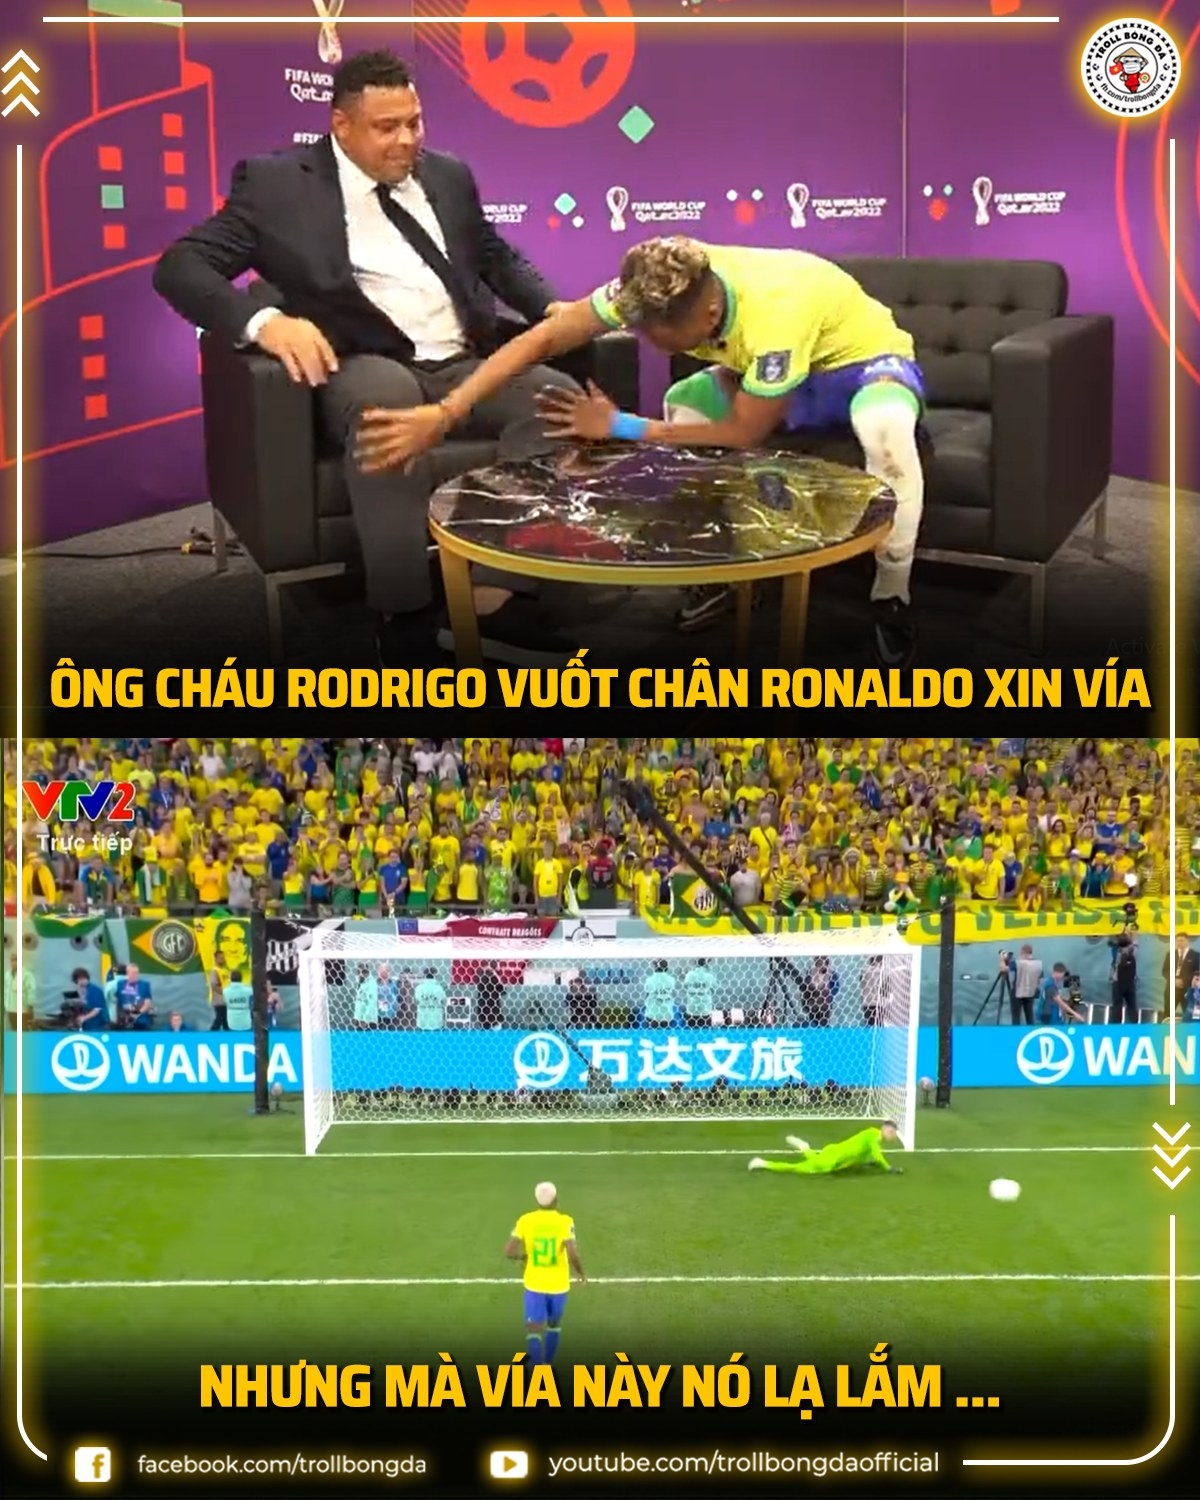 Biếm họa 24h: Neymar vẫn có thể đá World Cup 2026